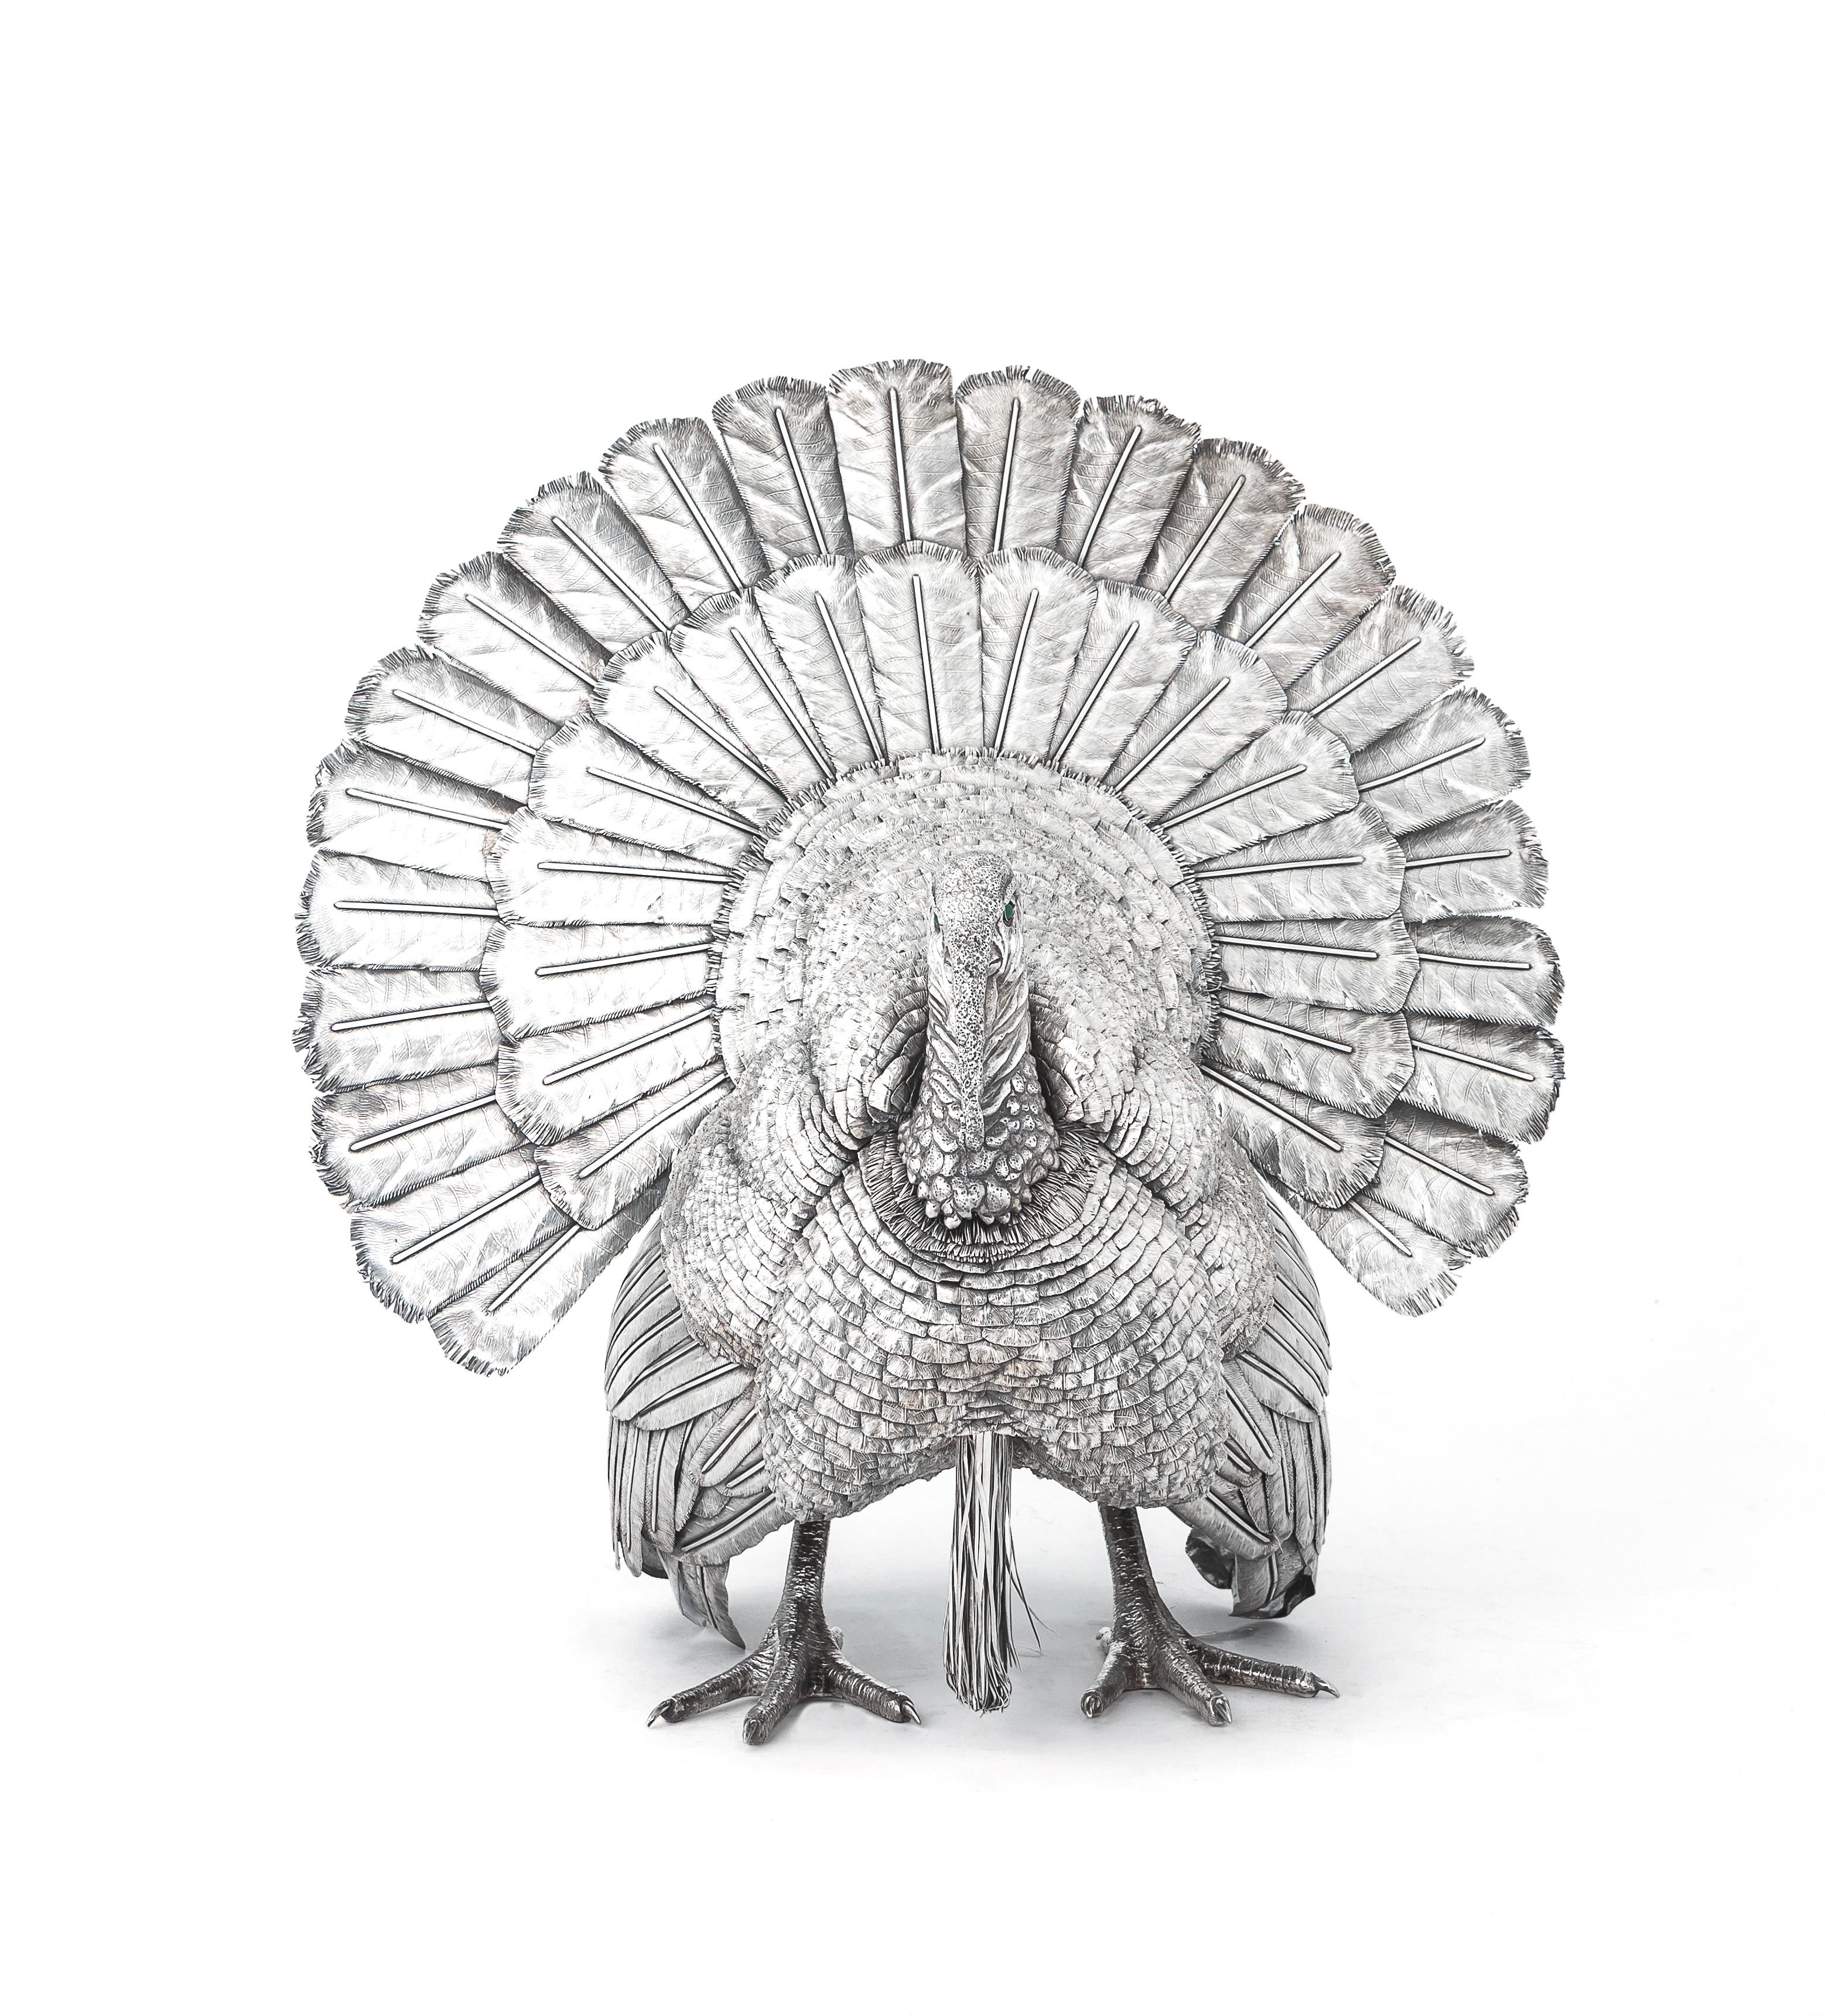 Italienischer Silbertruthahn des 20. Jahrhunderts von Mario Buccellati aus Mailand. Auf einer Schwanzfeder ist M. Buccellati eingraviert, auf einer anderen Schwanzfeder 800 und mit italienischer Fabrikmarke.  Seine Stücke spiegeln eine reiche